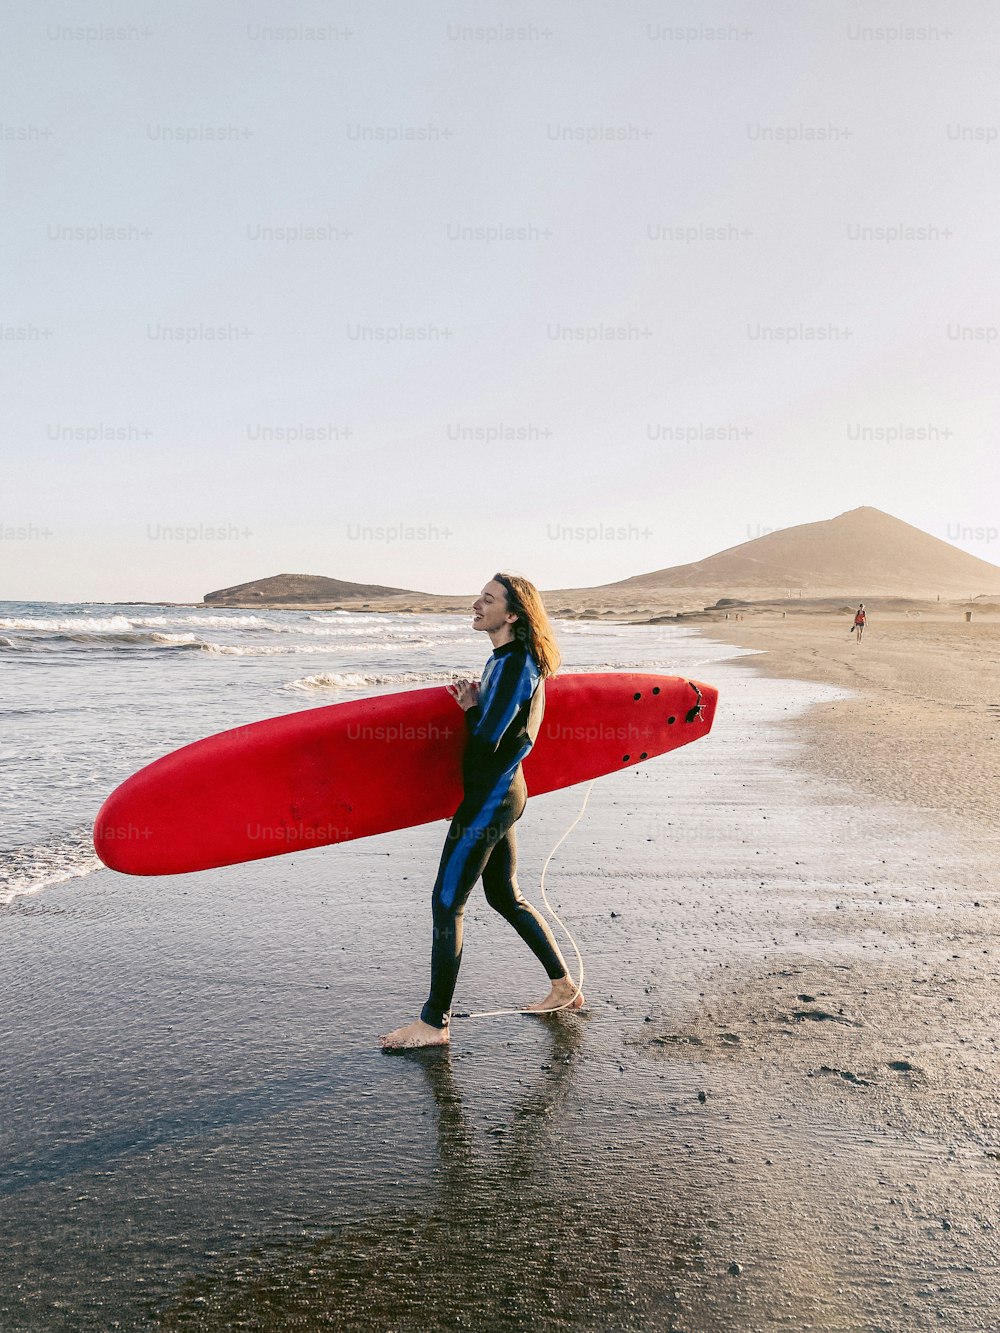 Jovem surfista caminhando com prancha de surf na praia. Imagem feita no telemóvel